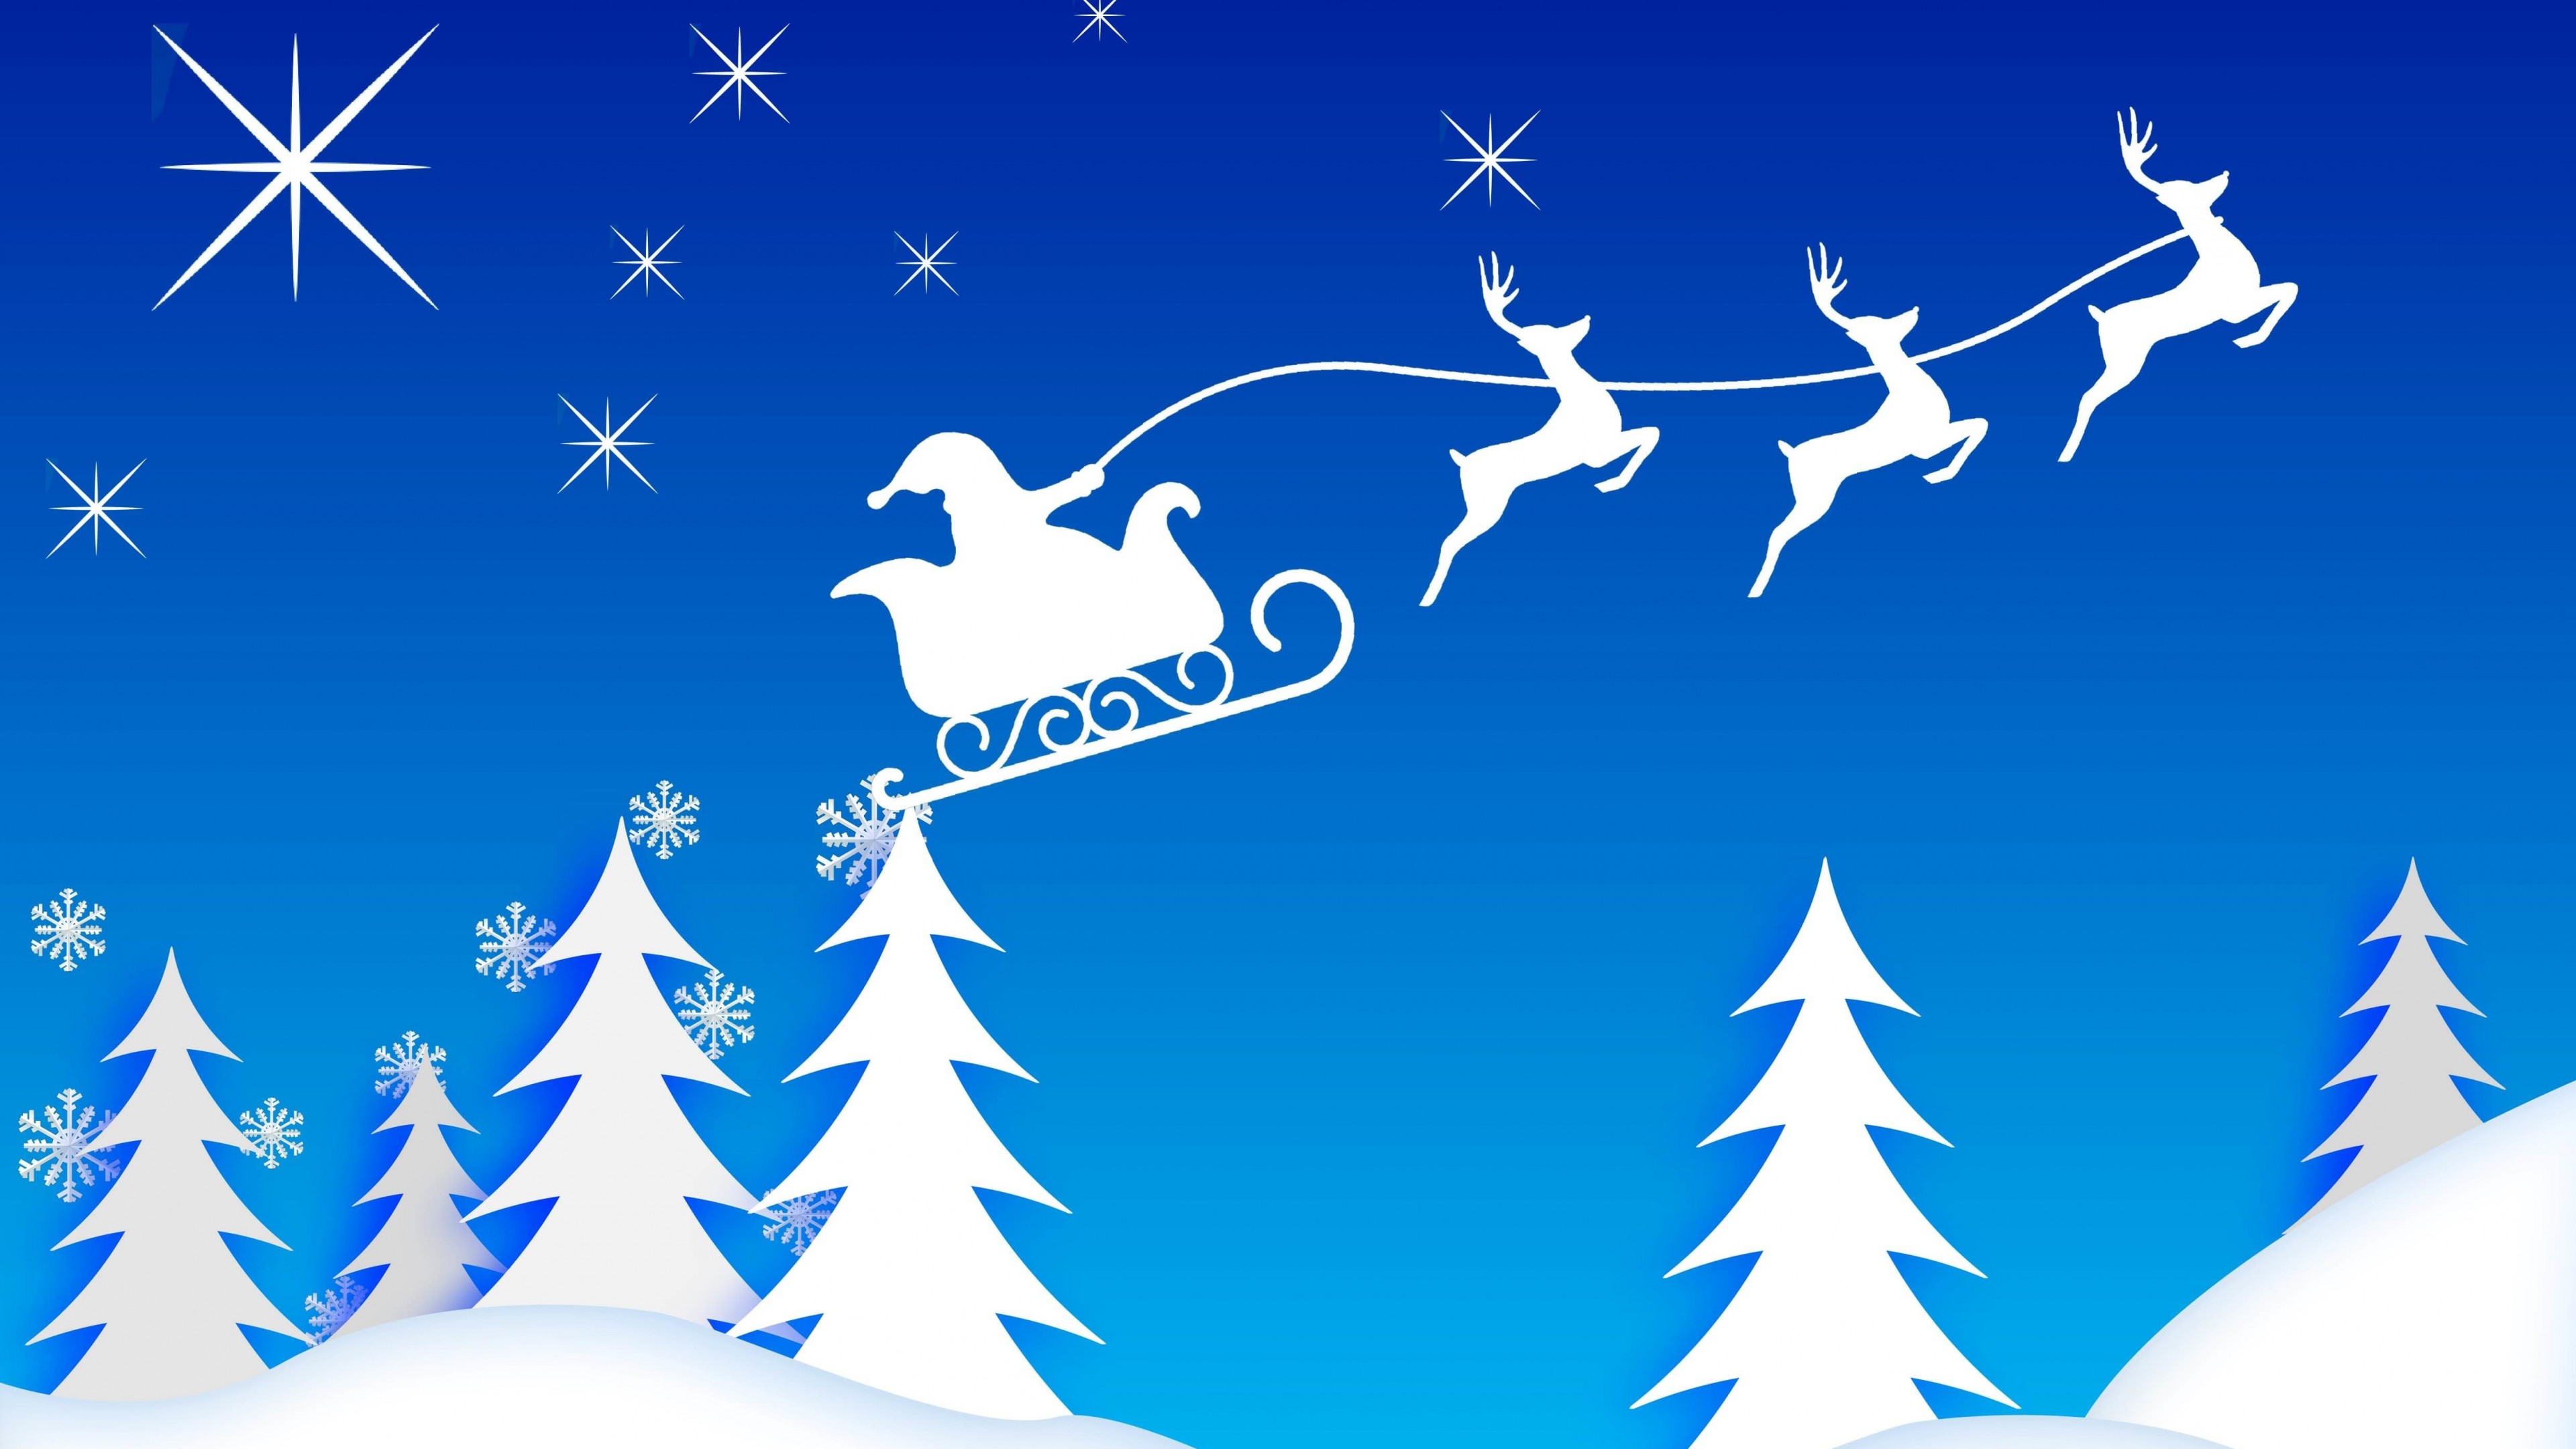 Santa’s Sleigh Illustration Wallpaper for Desktop 4K 3840x2160